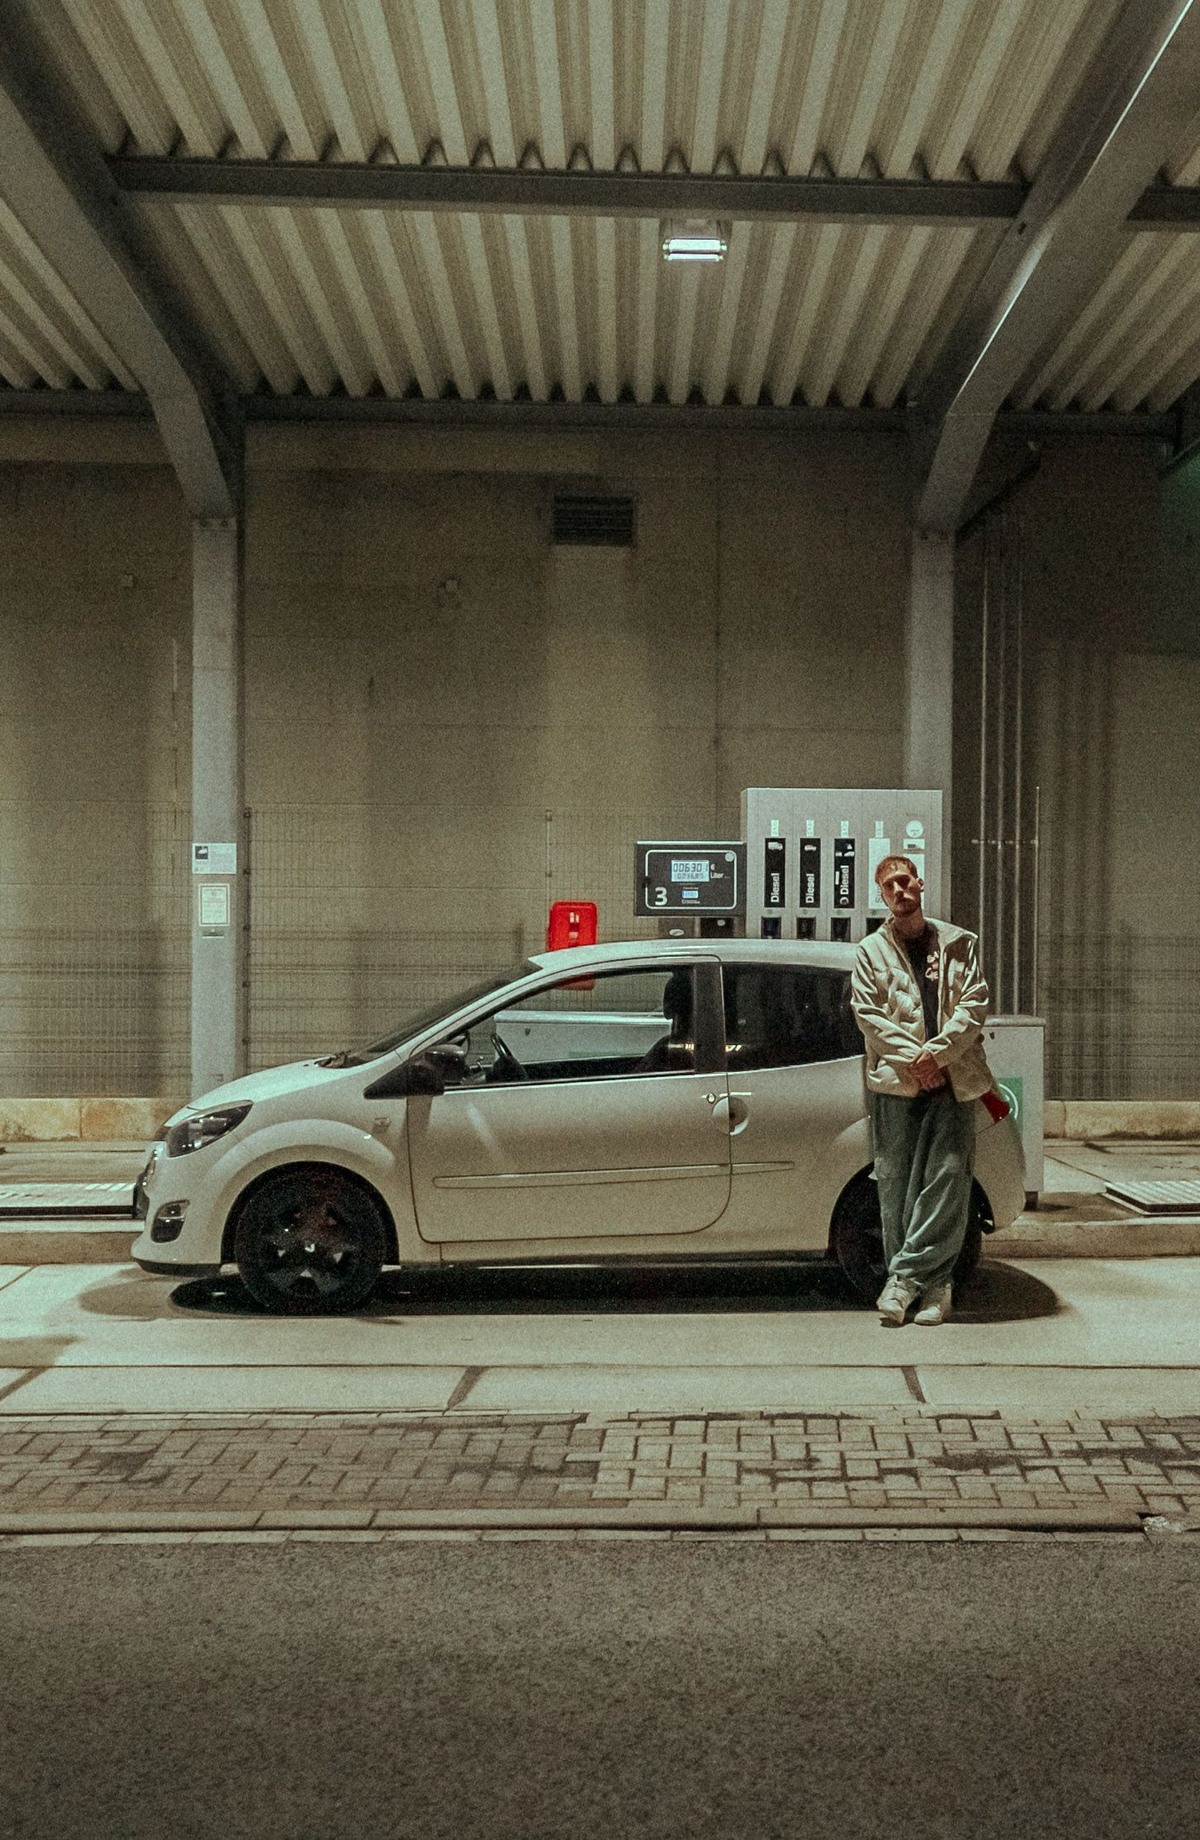 Sebastian Gröne aka Tänzer hockt vor einem weißen Kleinwagen, der neben einer Tanksäue steht, in einer nächtlichen, urbanen Umgebung.